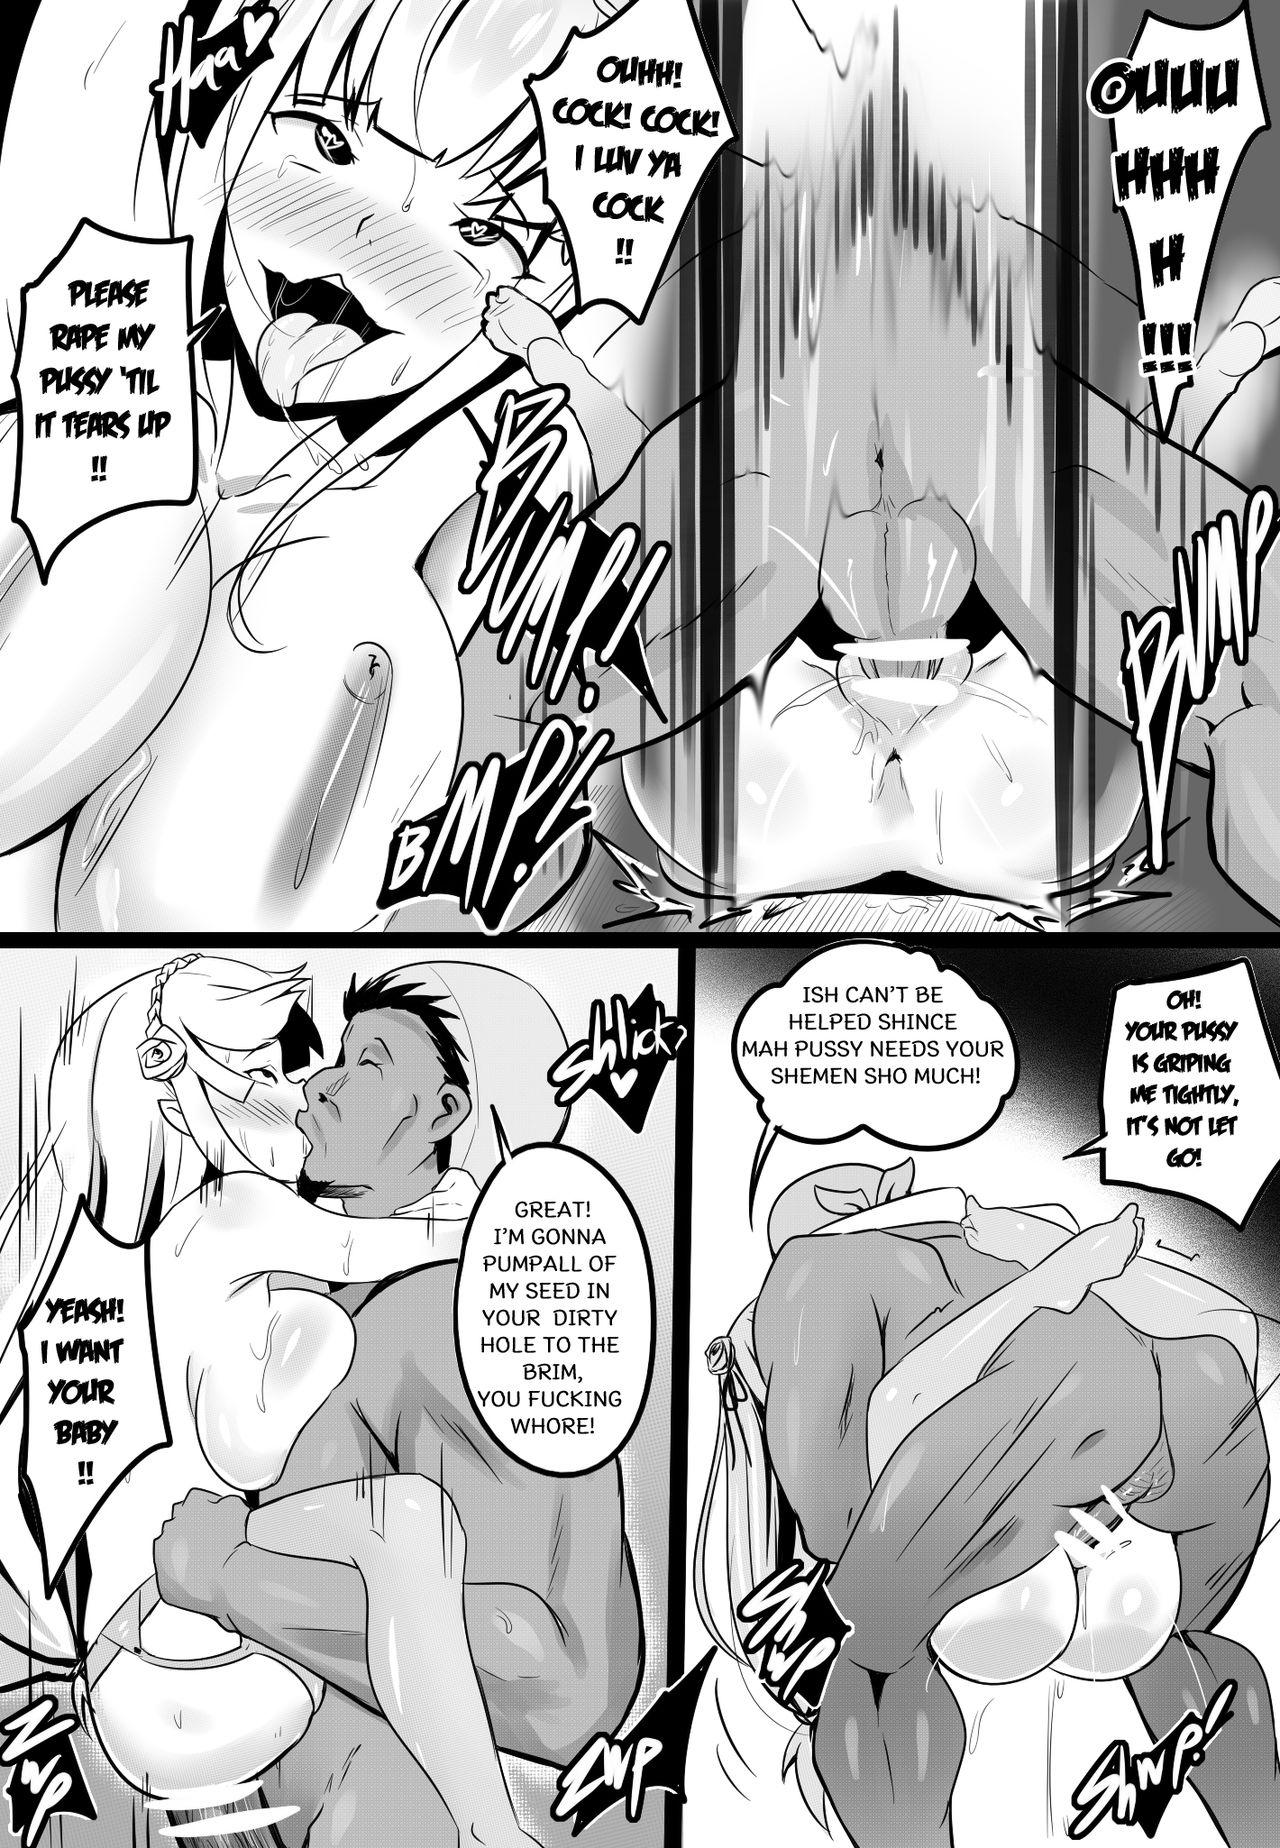 Hot Girls Fucking B-Trayal 14 - Re zero kara hajimeru isekai seikatsu Outdoor Sex - Page 13